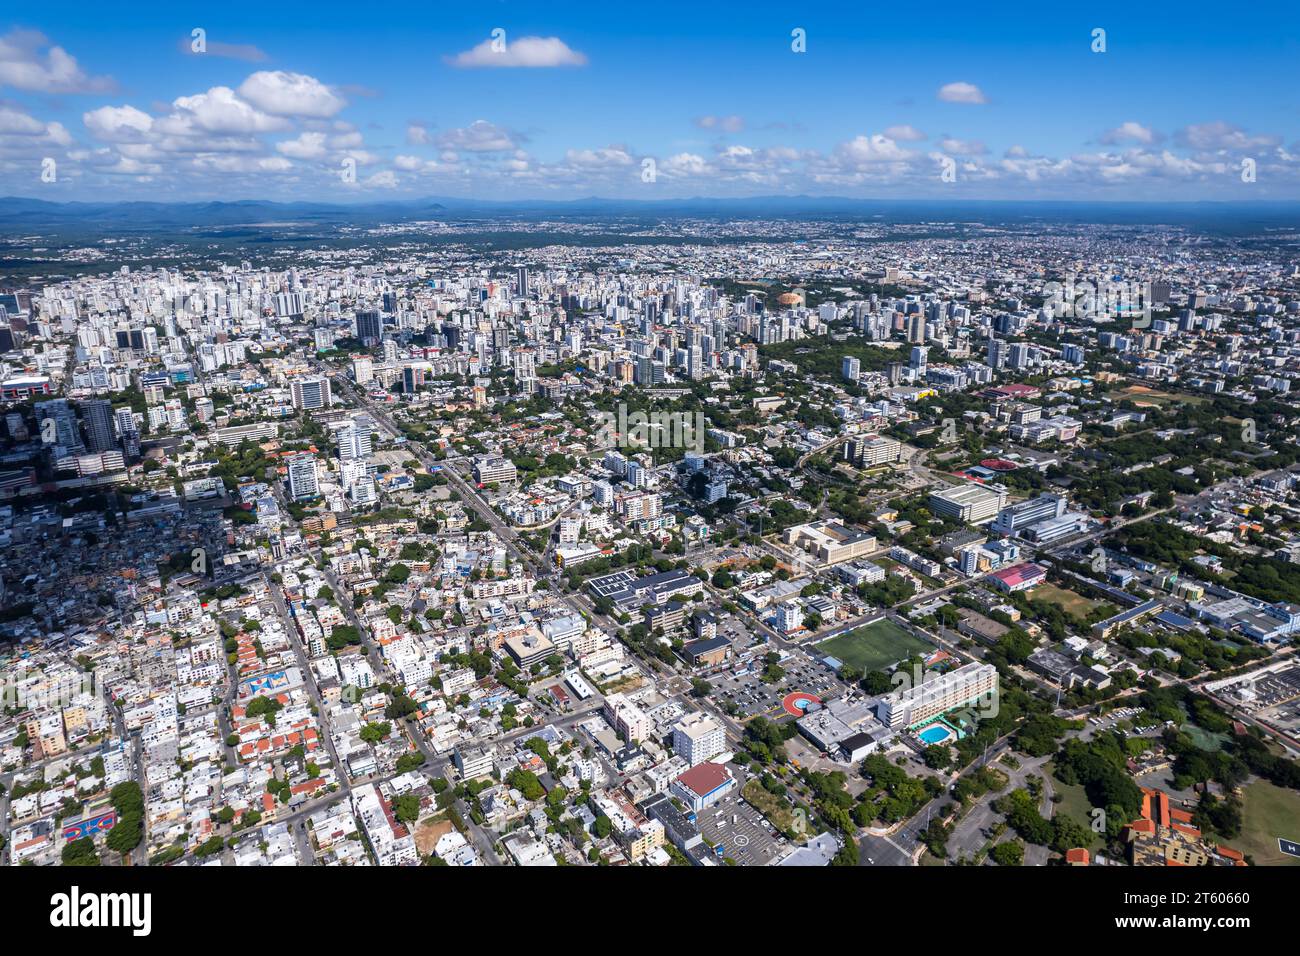 Aerial view Santo Domingo, Capital Of Dominican Republic, its beautiful streets and buildings, la Fuente Centro de los Heroes, the Pabellón de heroes Stock Photo